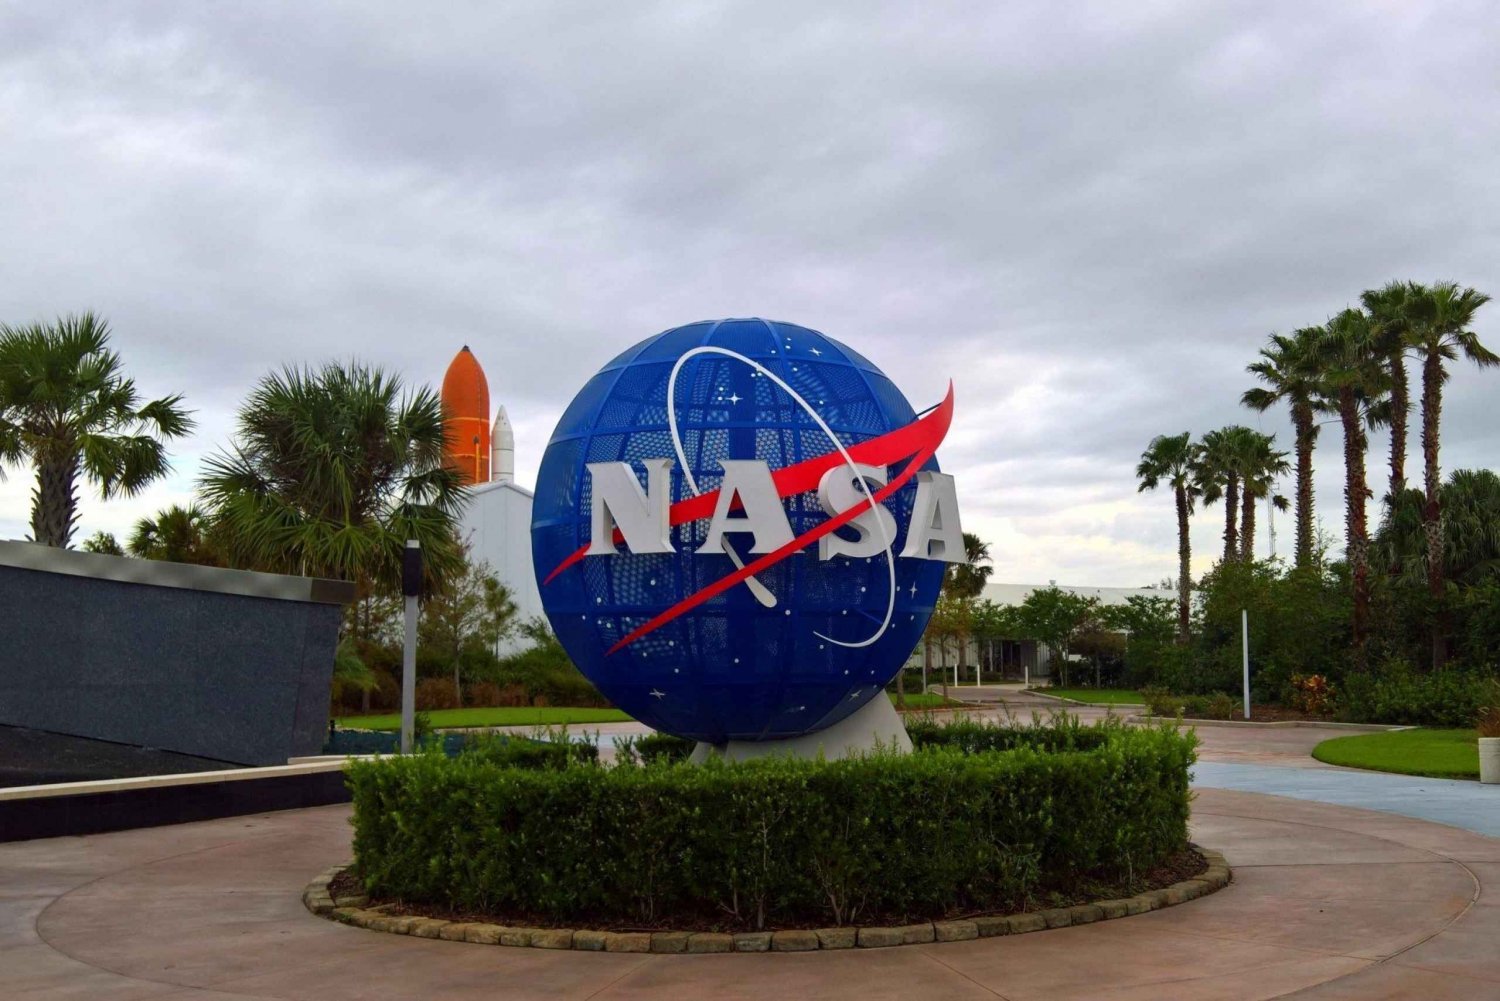 Miamista - Enchanted NASA Tour